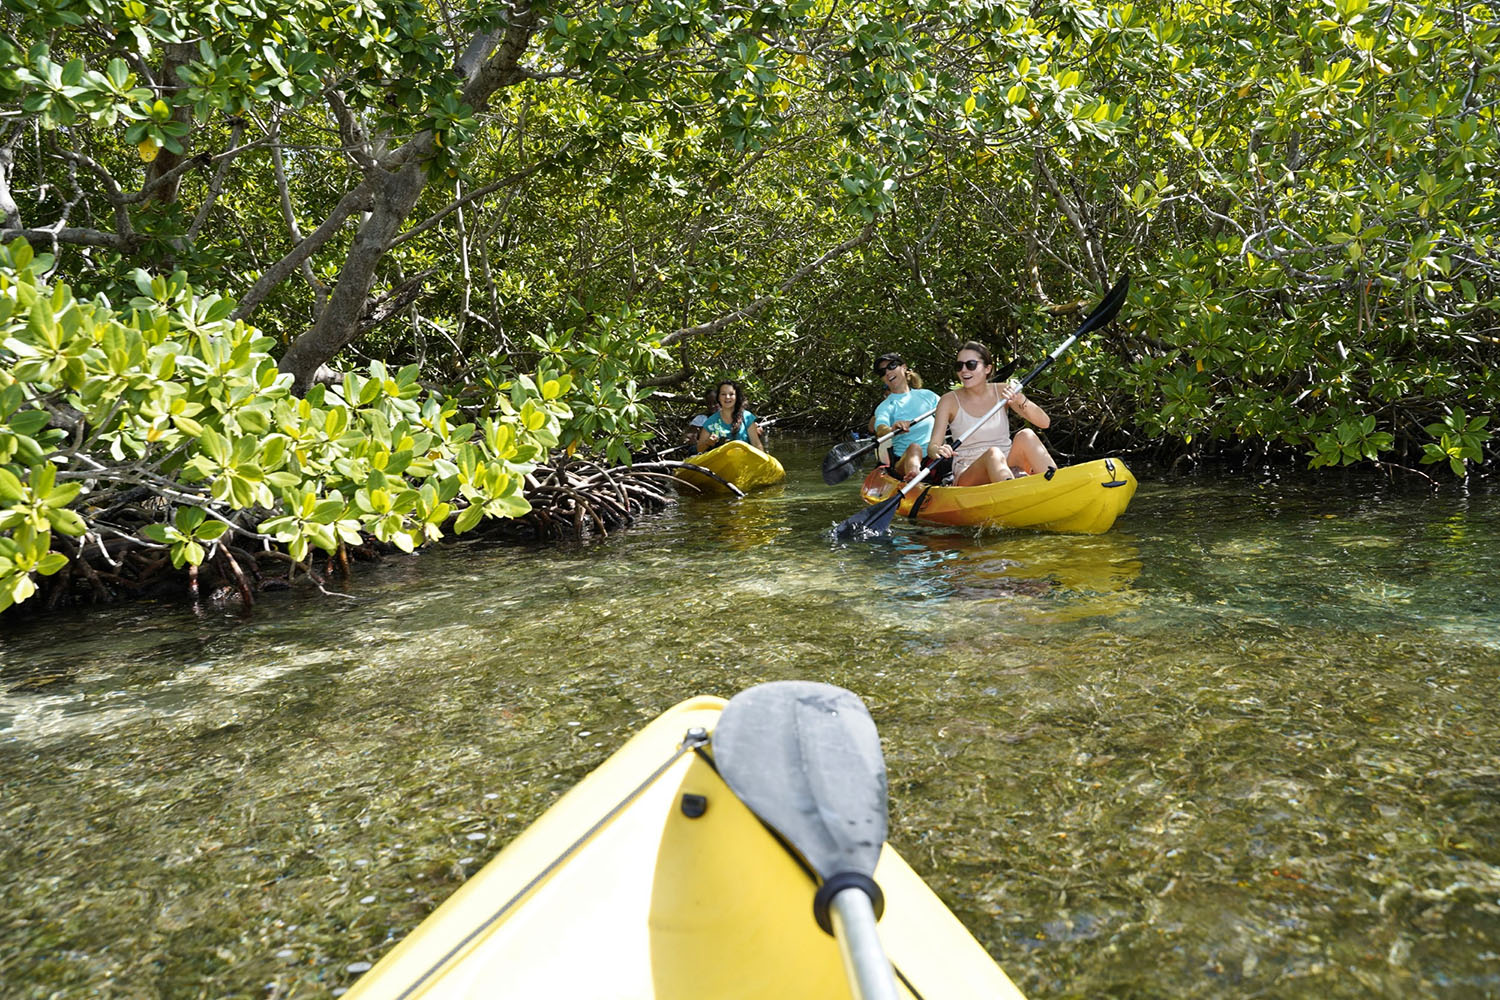 Cétacés et faune marine de Guadeloupe, voyage scientifique. Kayak dans la Mangrove © Tamtampagaie